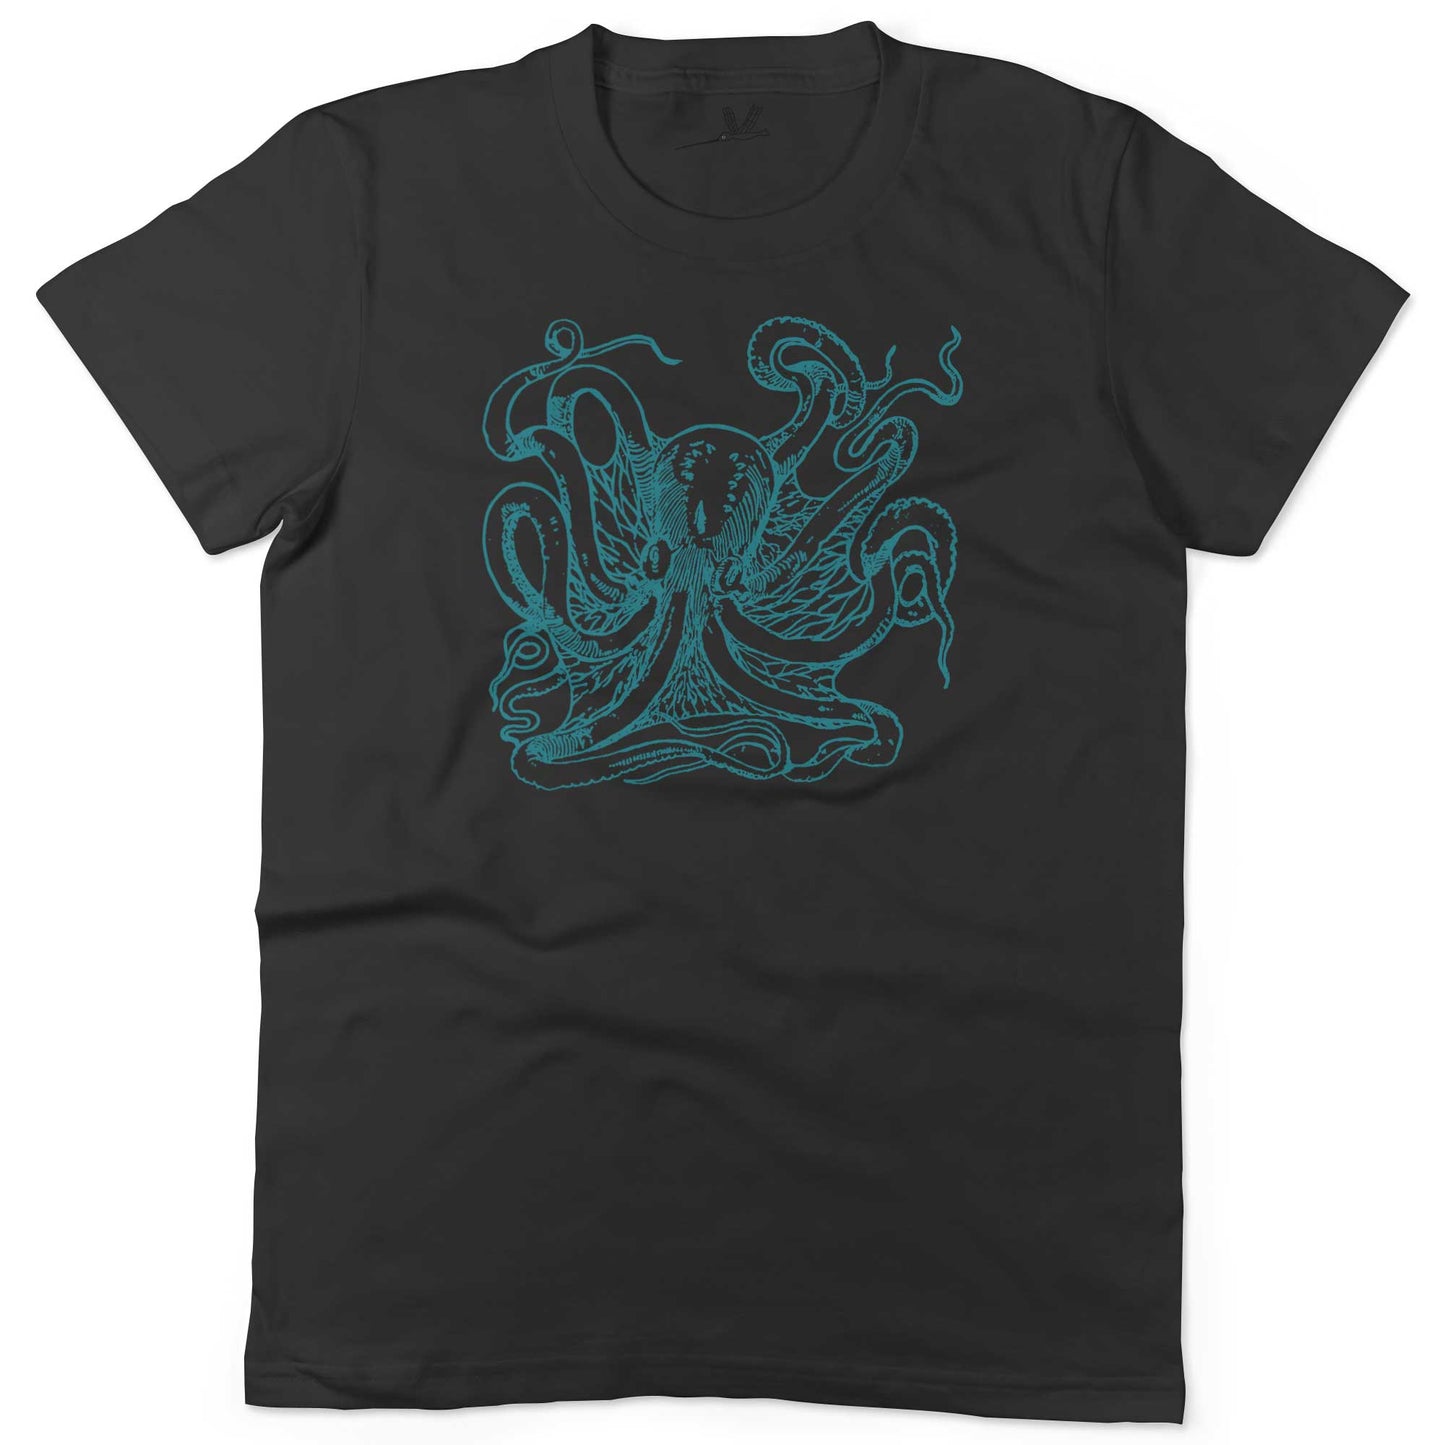 Giant Octopus Unisex Or Women's Cotton T-shirt-Black-Woman